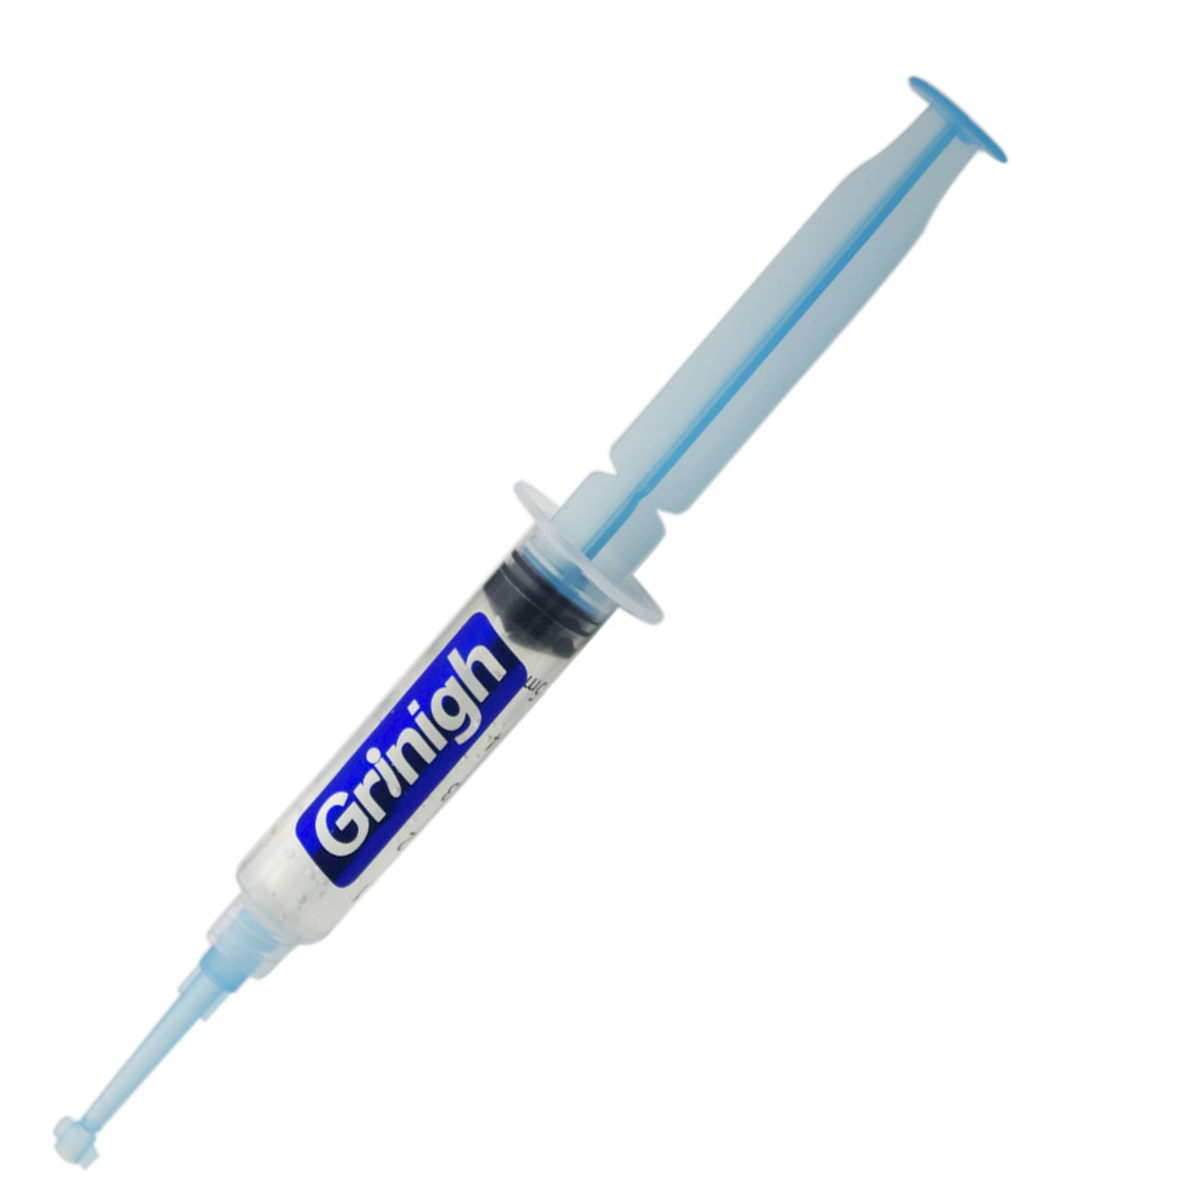 Grin365 Безусловные Выражения системы Отбеливание зубов - Делюкс Kit со светодиодной подсветкой, Гель реминерализации, VE Тампоны, и Whitening Pen